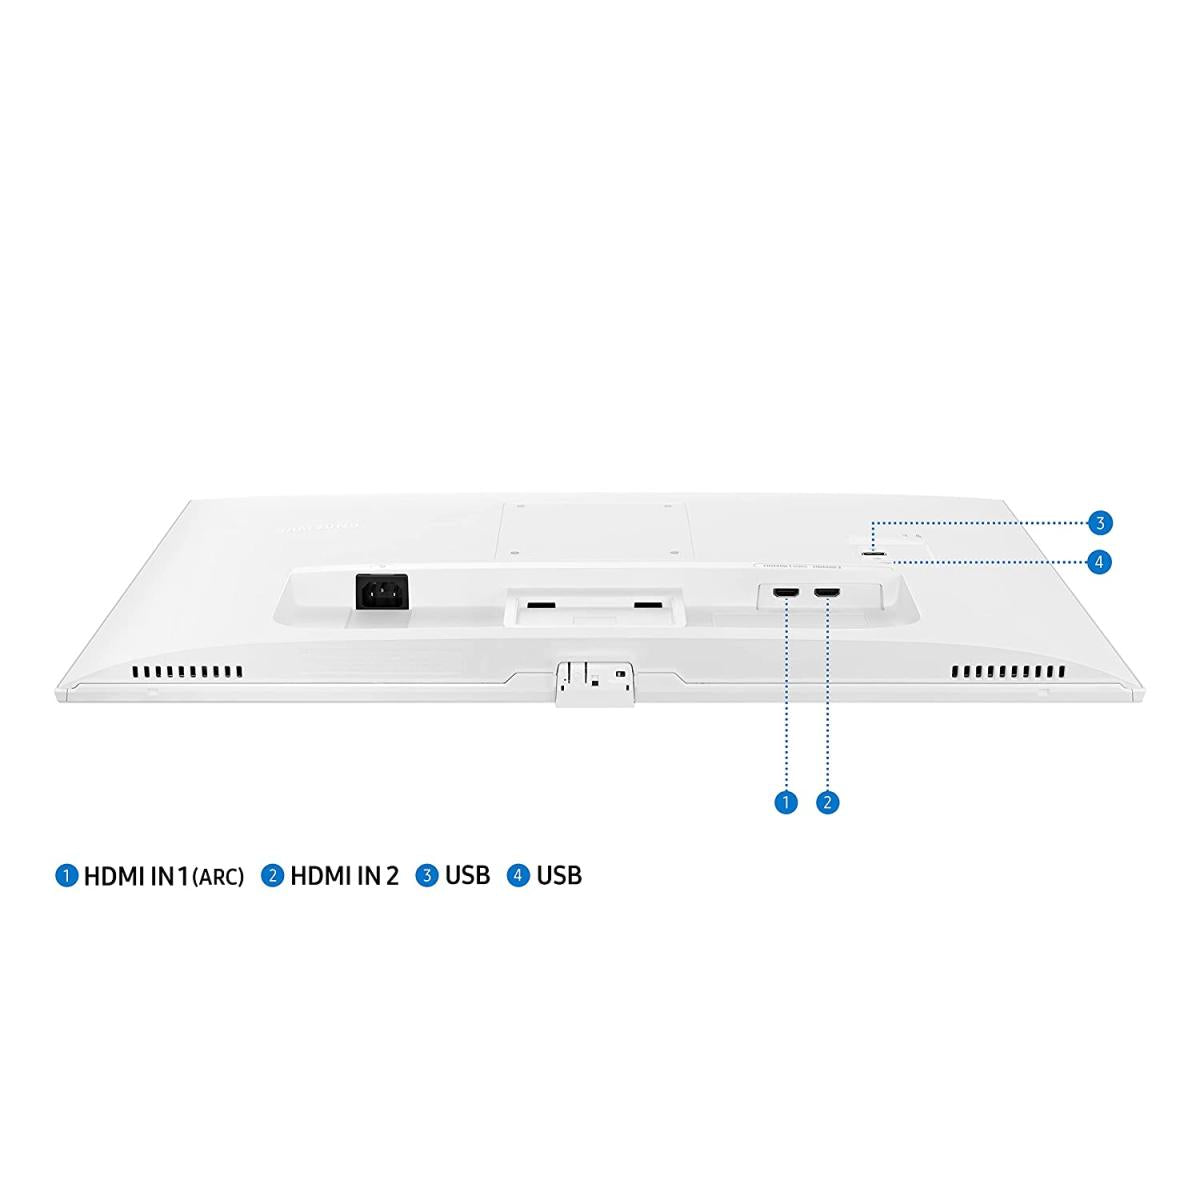 Samsung 32" Smart Monitor M5 (White)